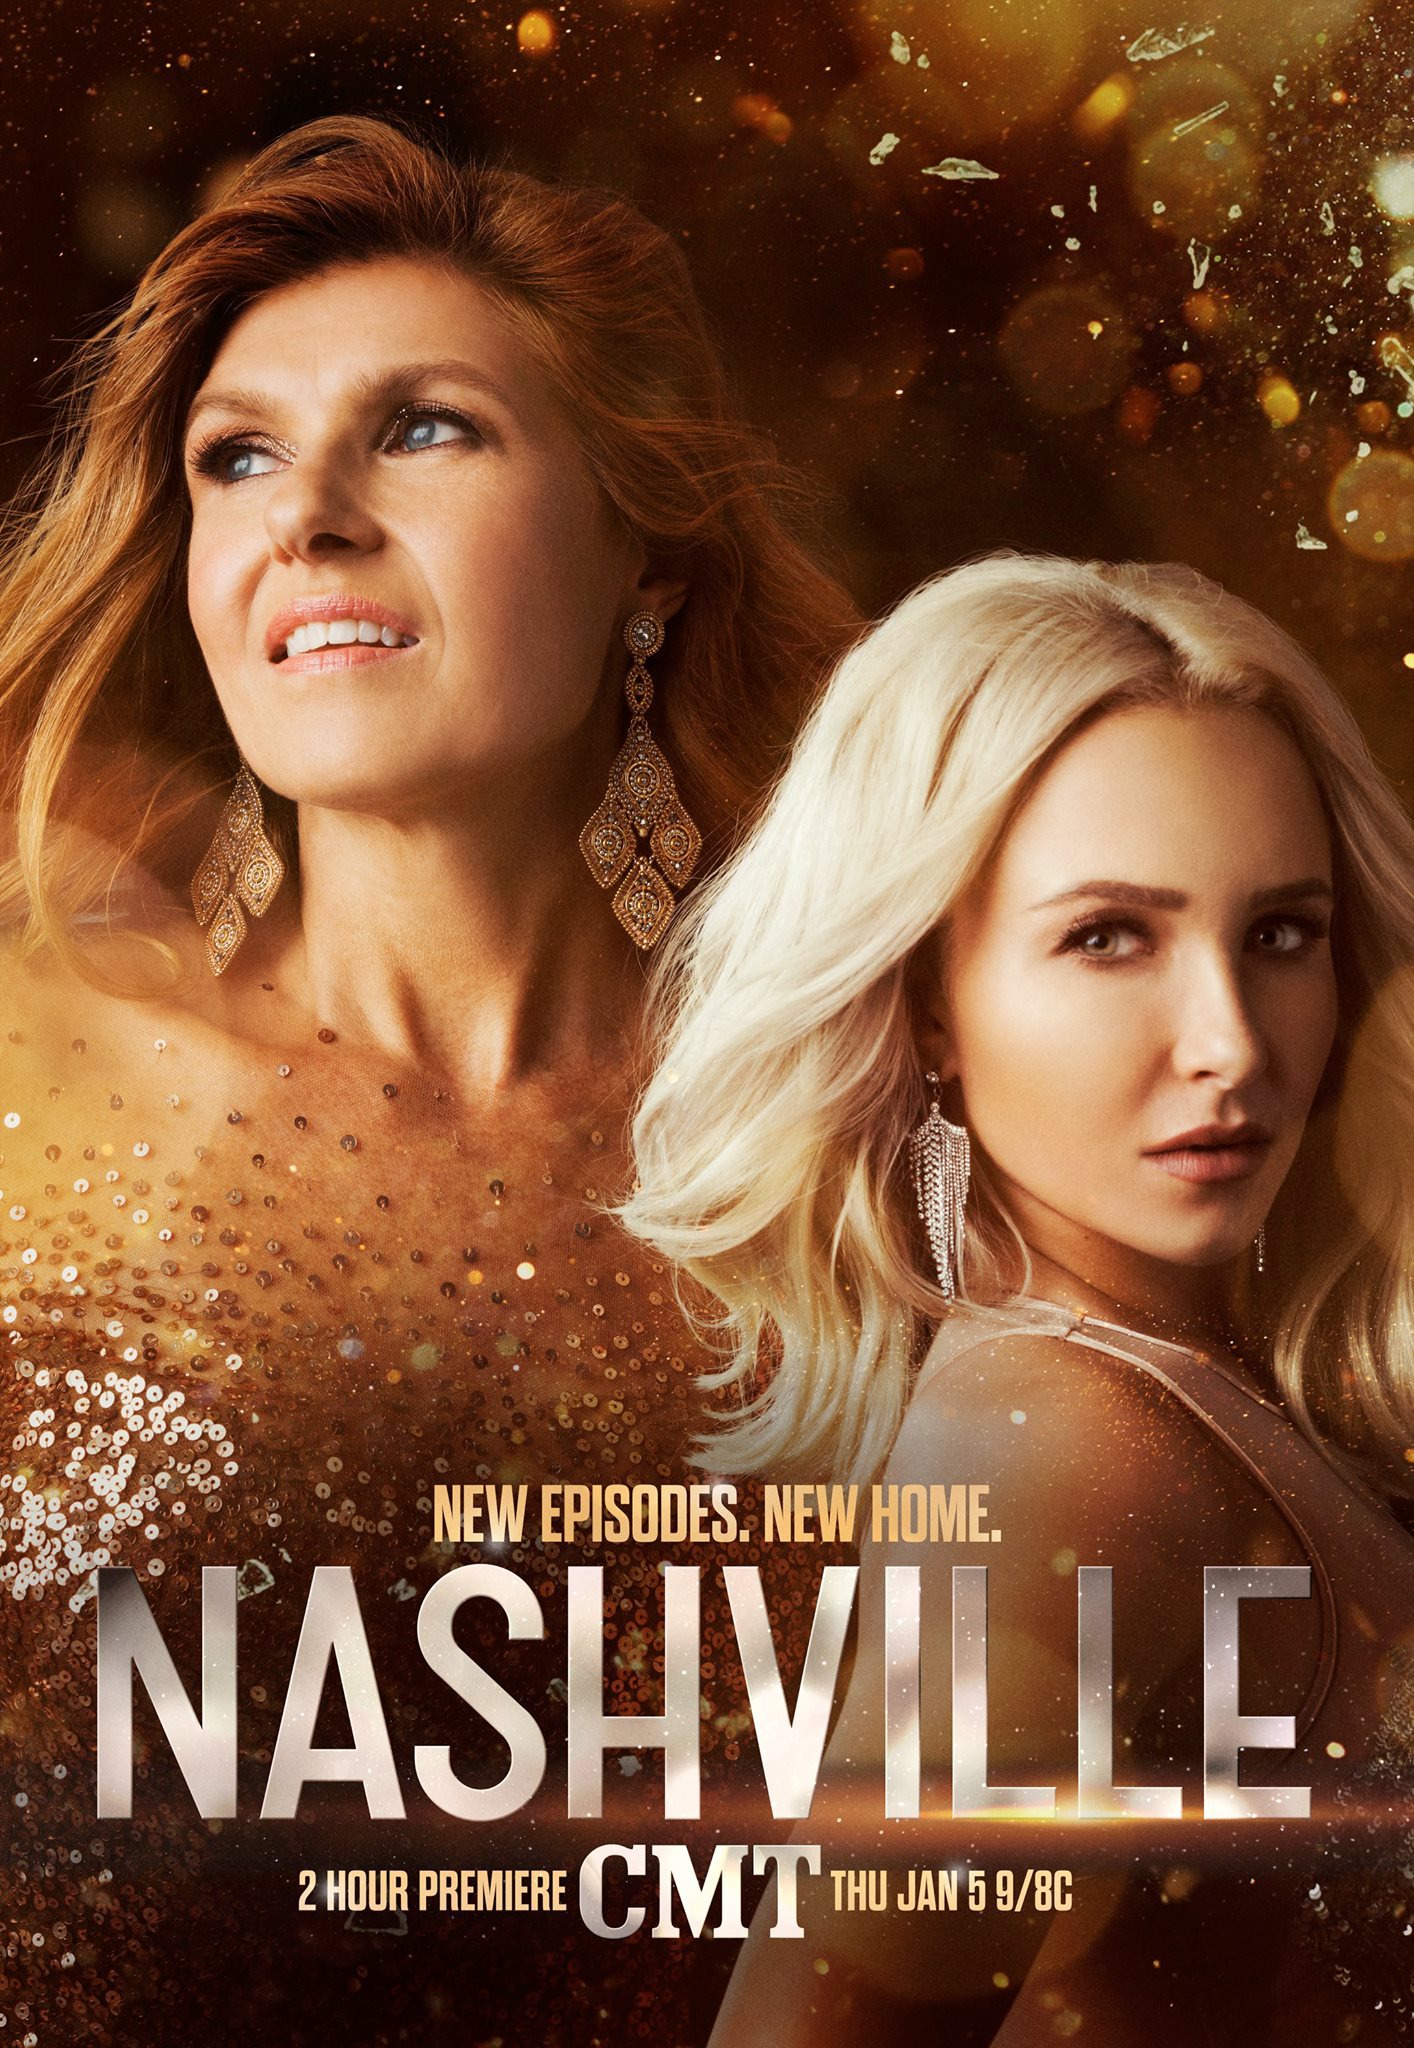 Mega Sized TV Poster Image for Nashville (#5 of 5)